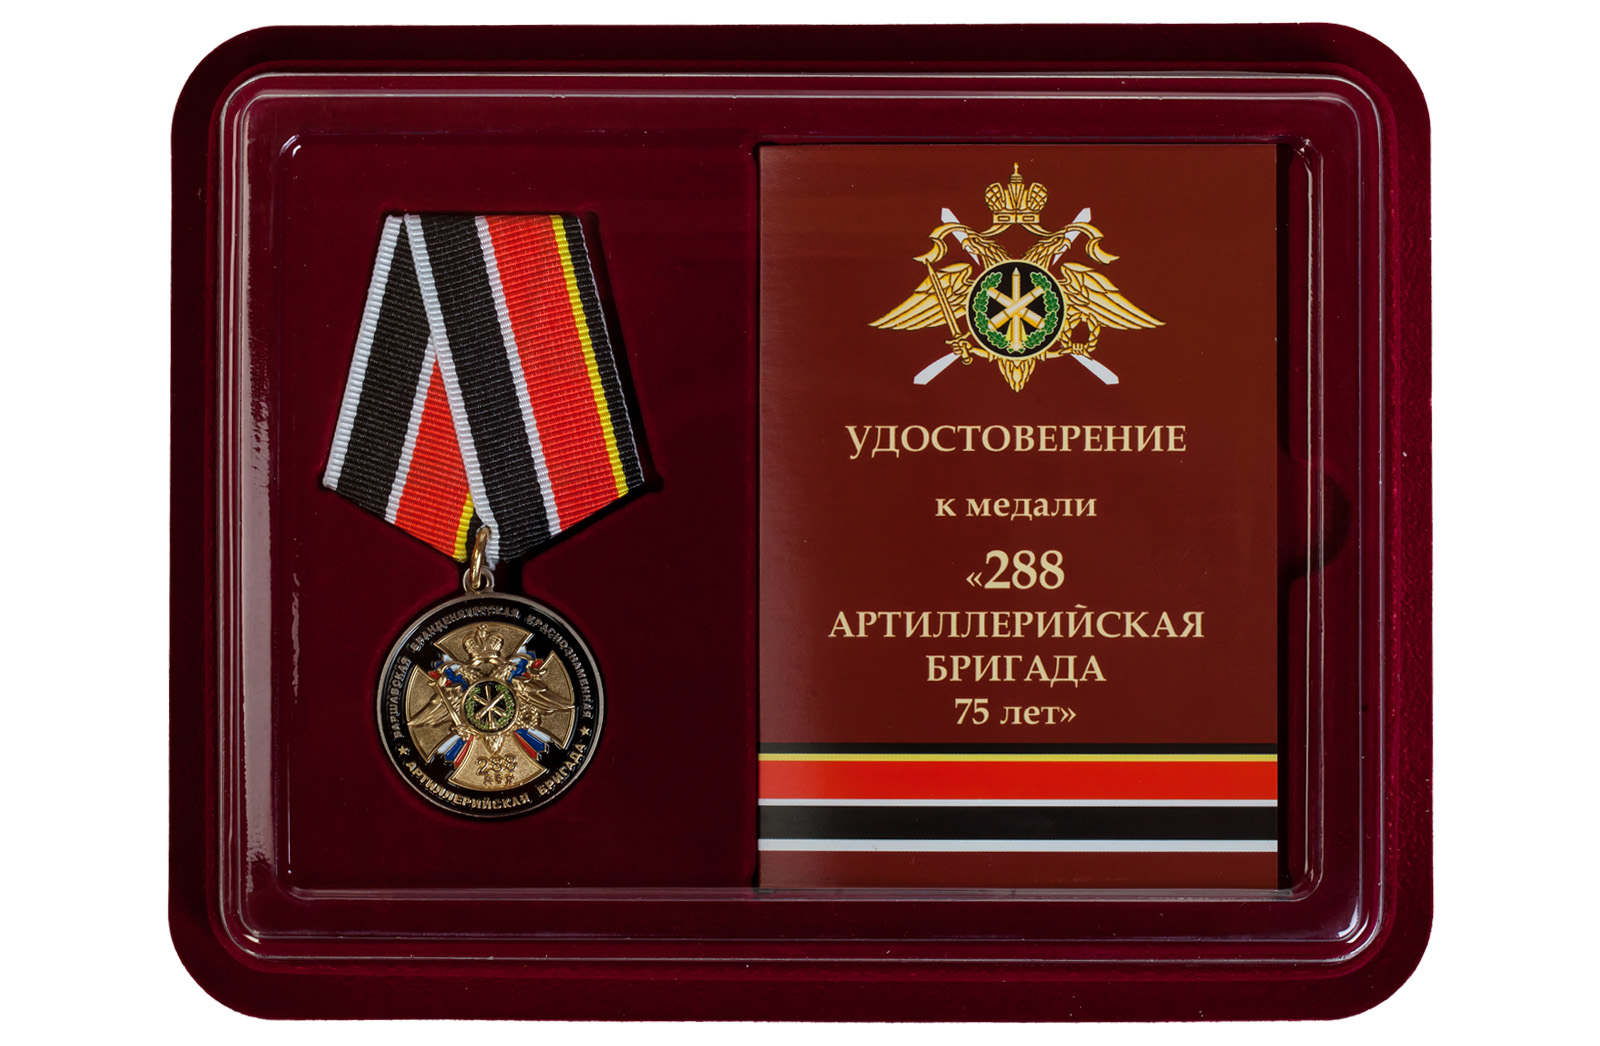 Купить памятную медаль 75 лет 288-ой Артиллерийской бригады по лучшей цене